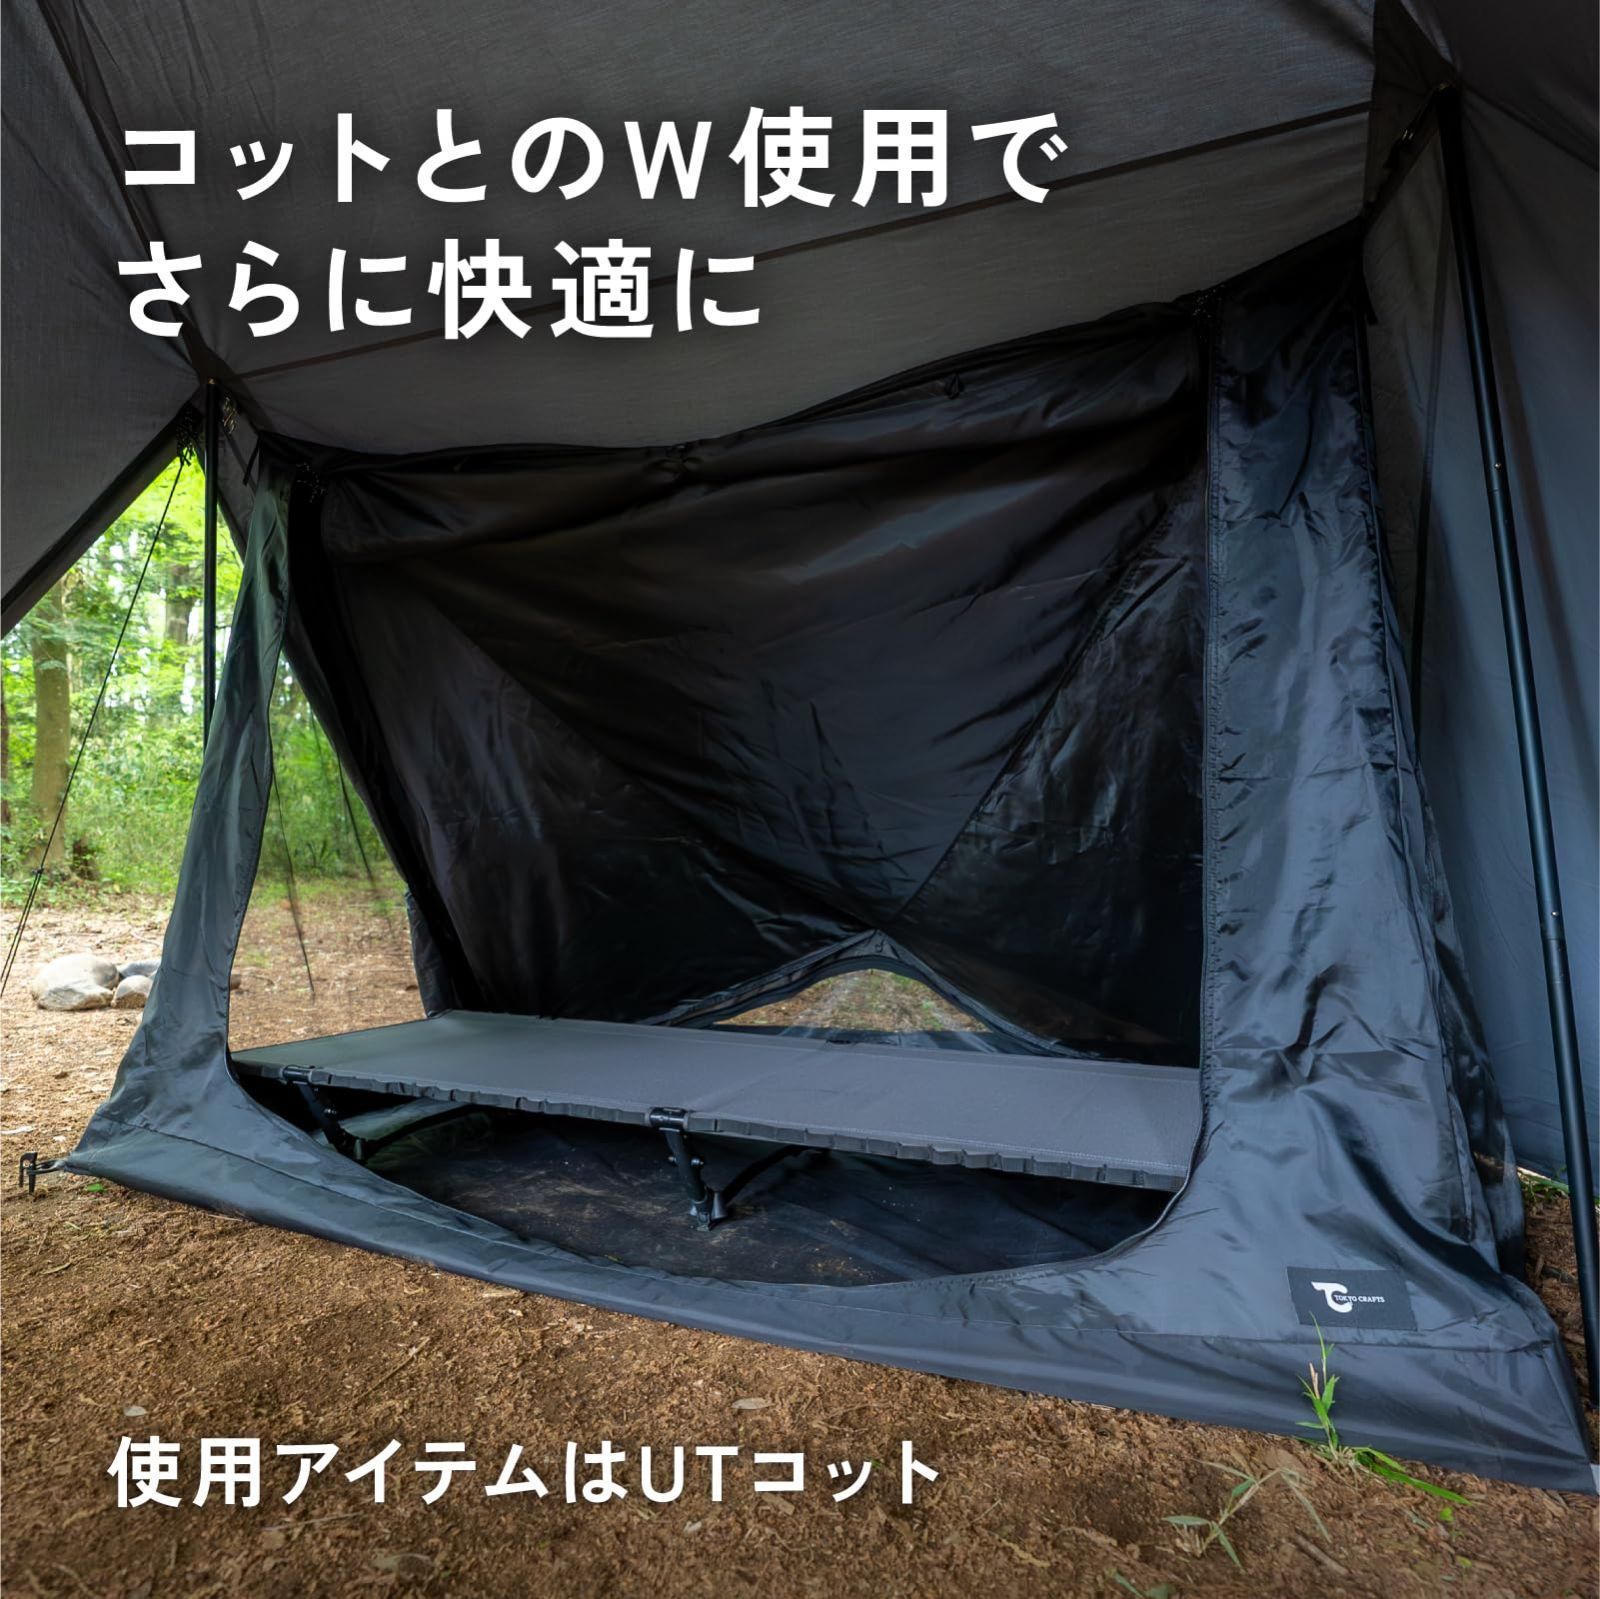 TOKYO CRAFTS ダイヤフォートTC テント グレー ソロキャンプ